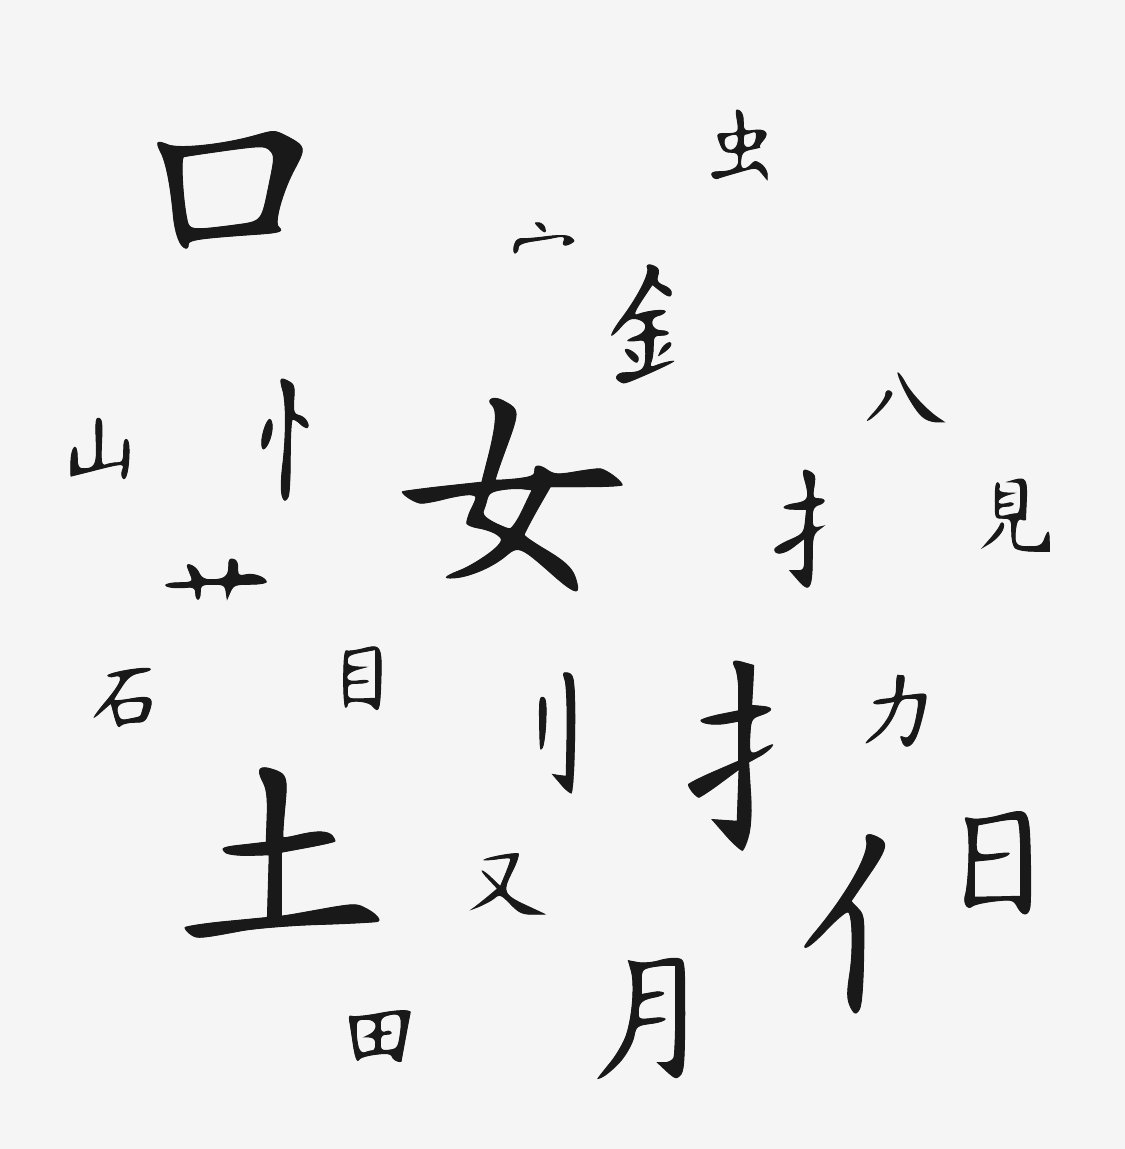 Символы китайского языка